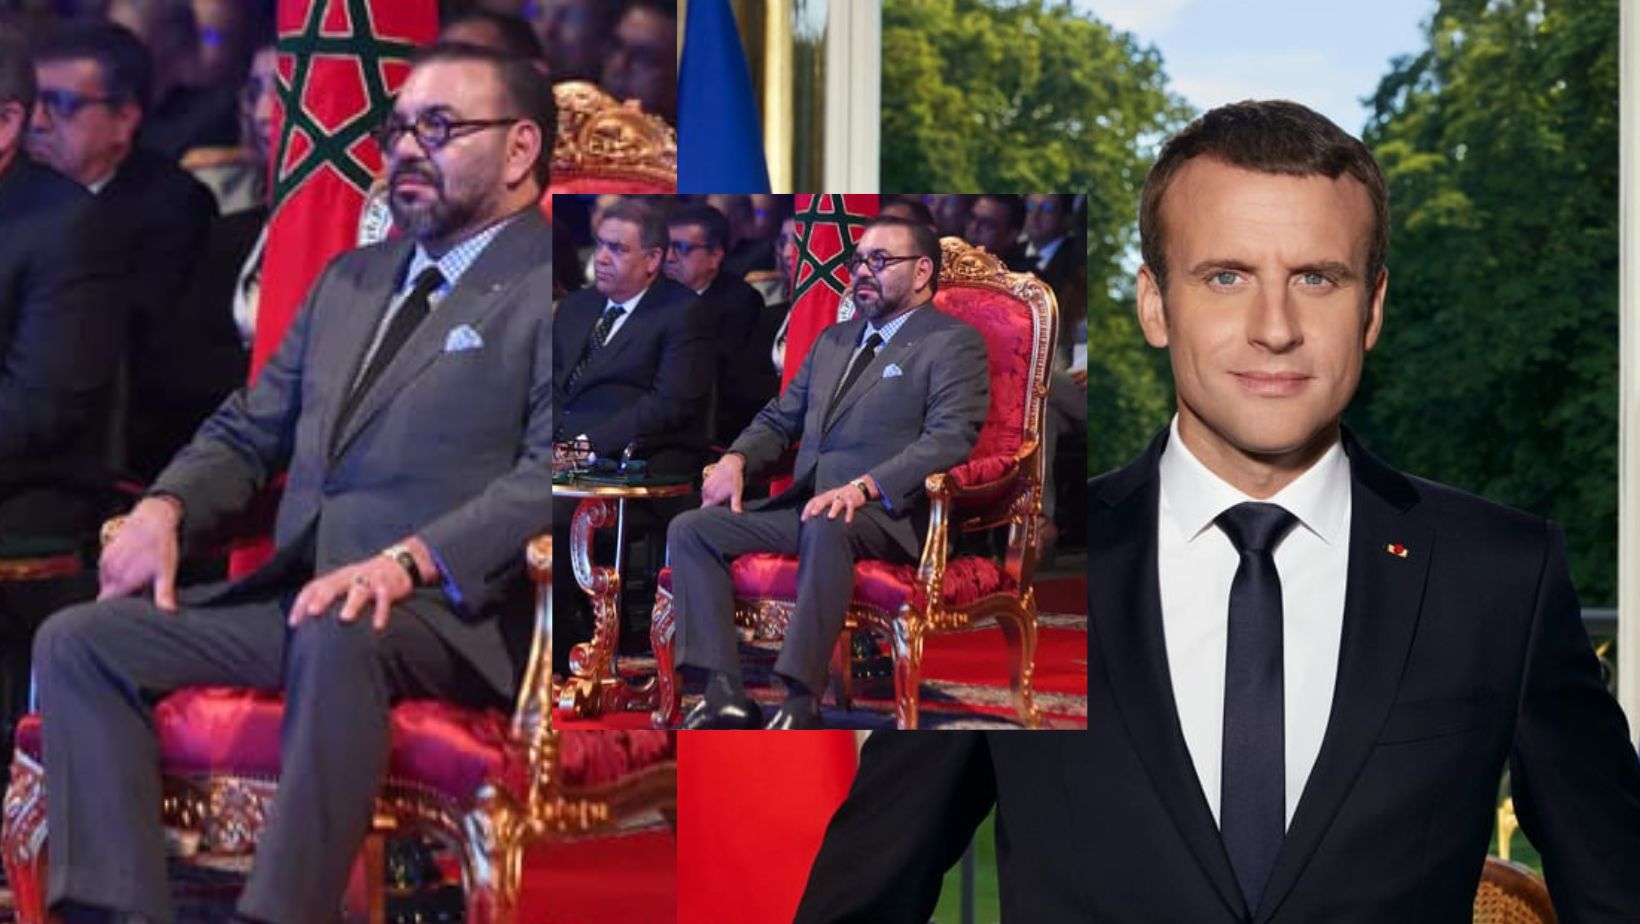 Le roi Mohammed VI aurait refusé l’invitation à dîner de Macron